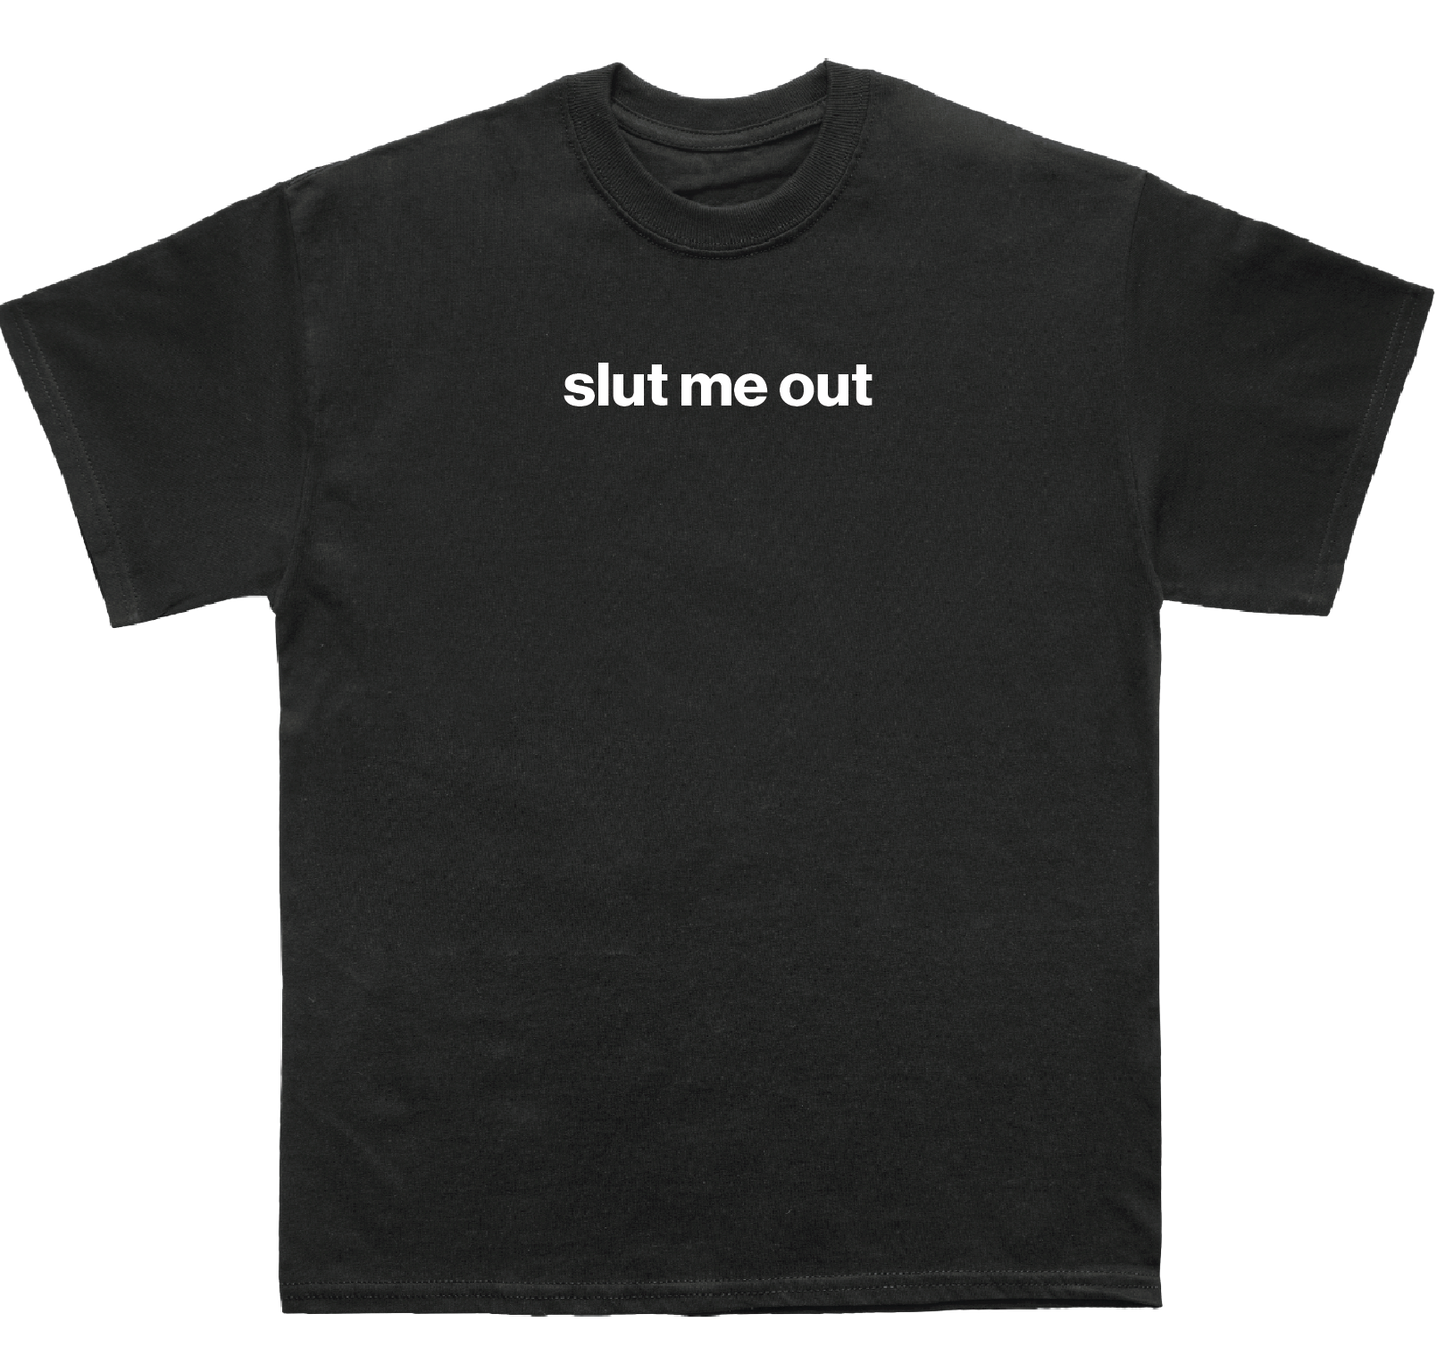 slut me out shirt